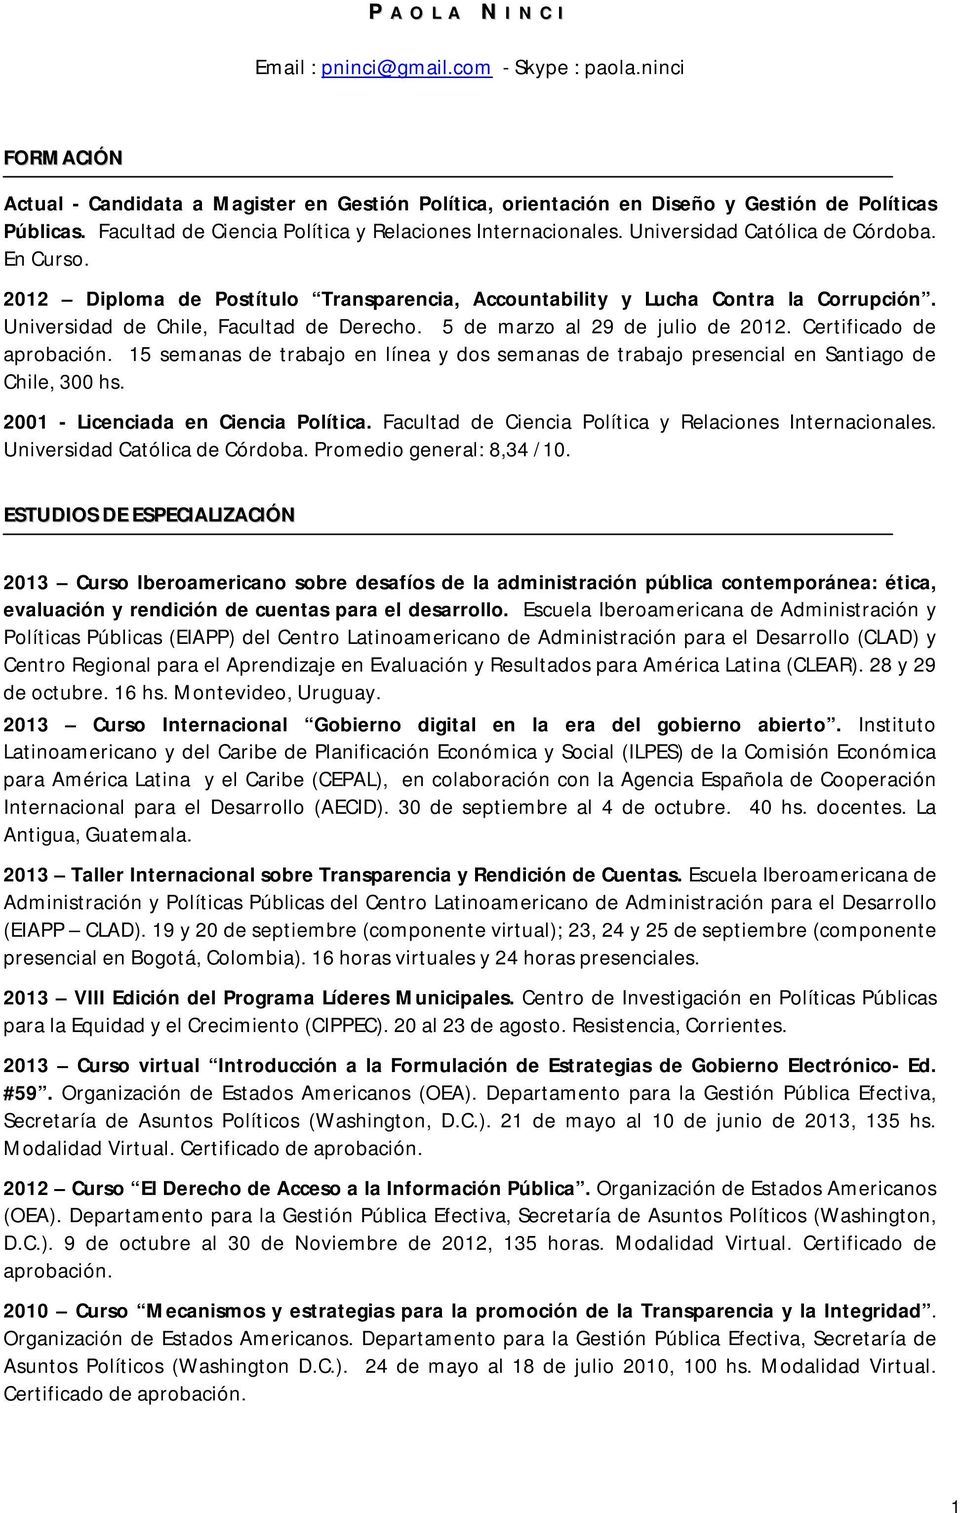 Universidad de Chile, Facultad de Derecho. 5 de marzo al 29 de julio de 2012. Certificado de aprobación.